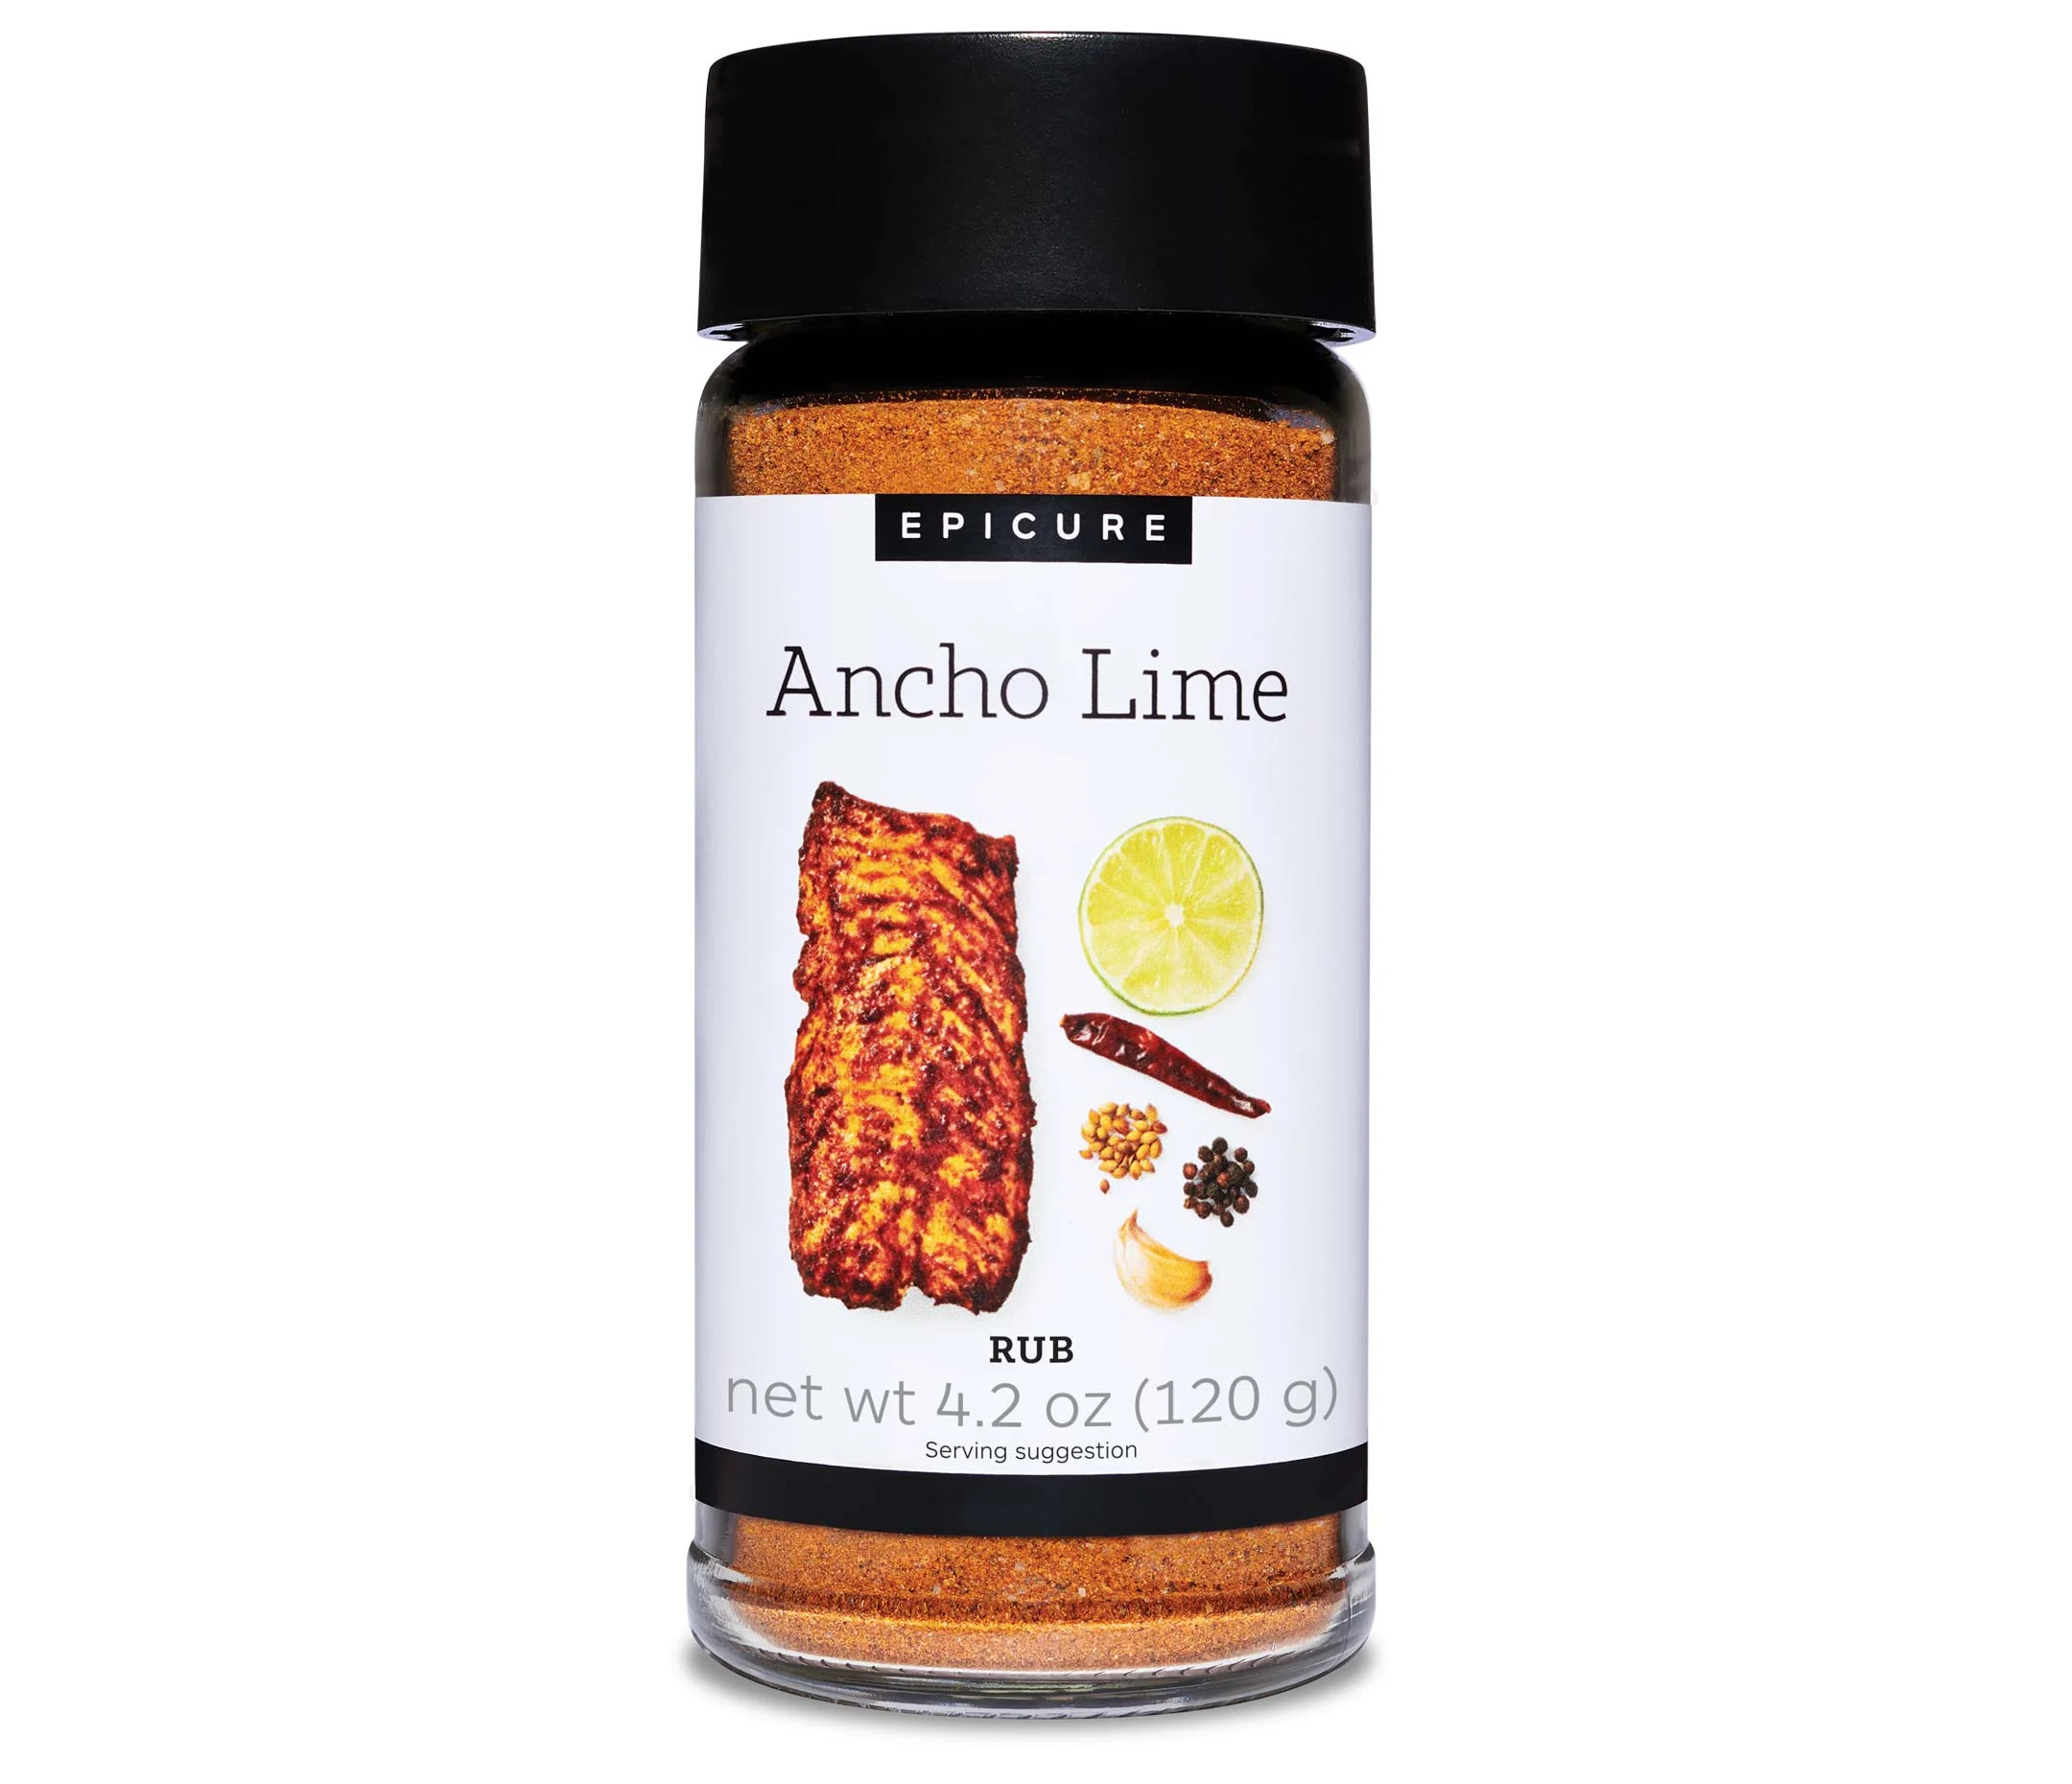 Ancho Lime Rub